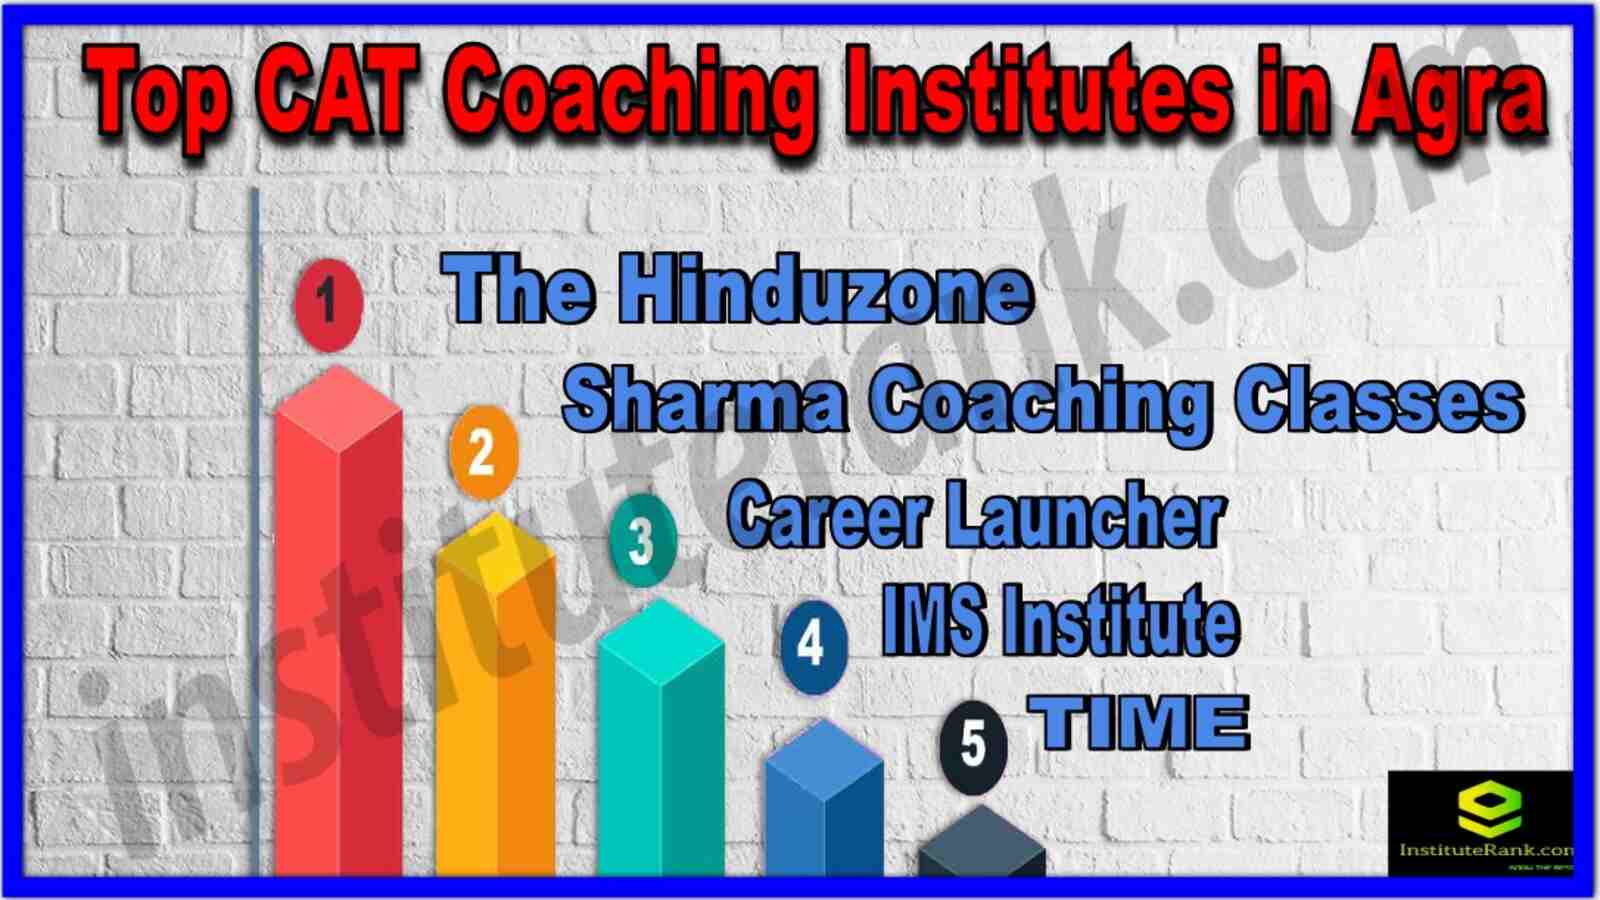 Top Cat Coaching institutes in Agra